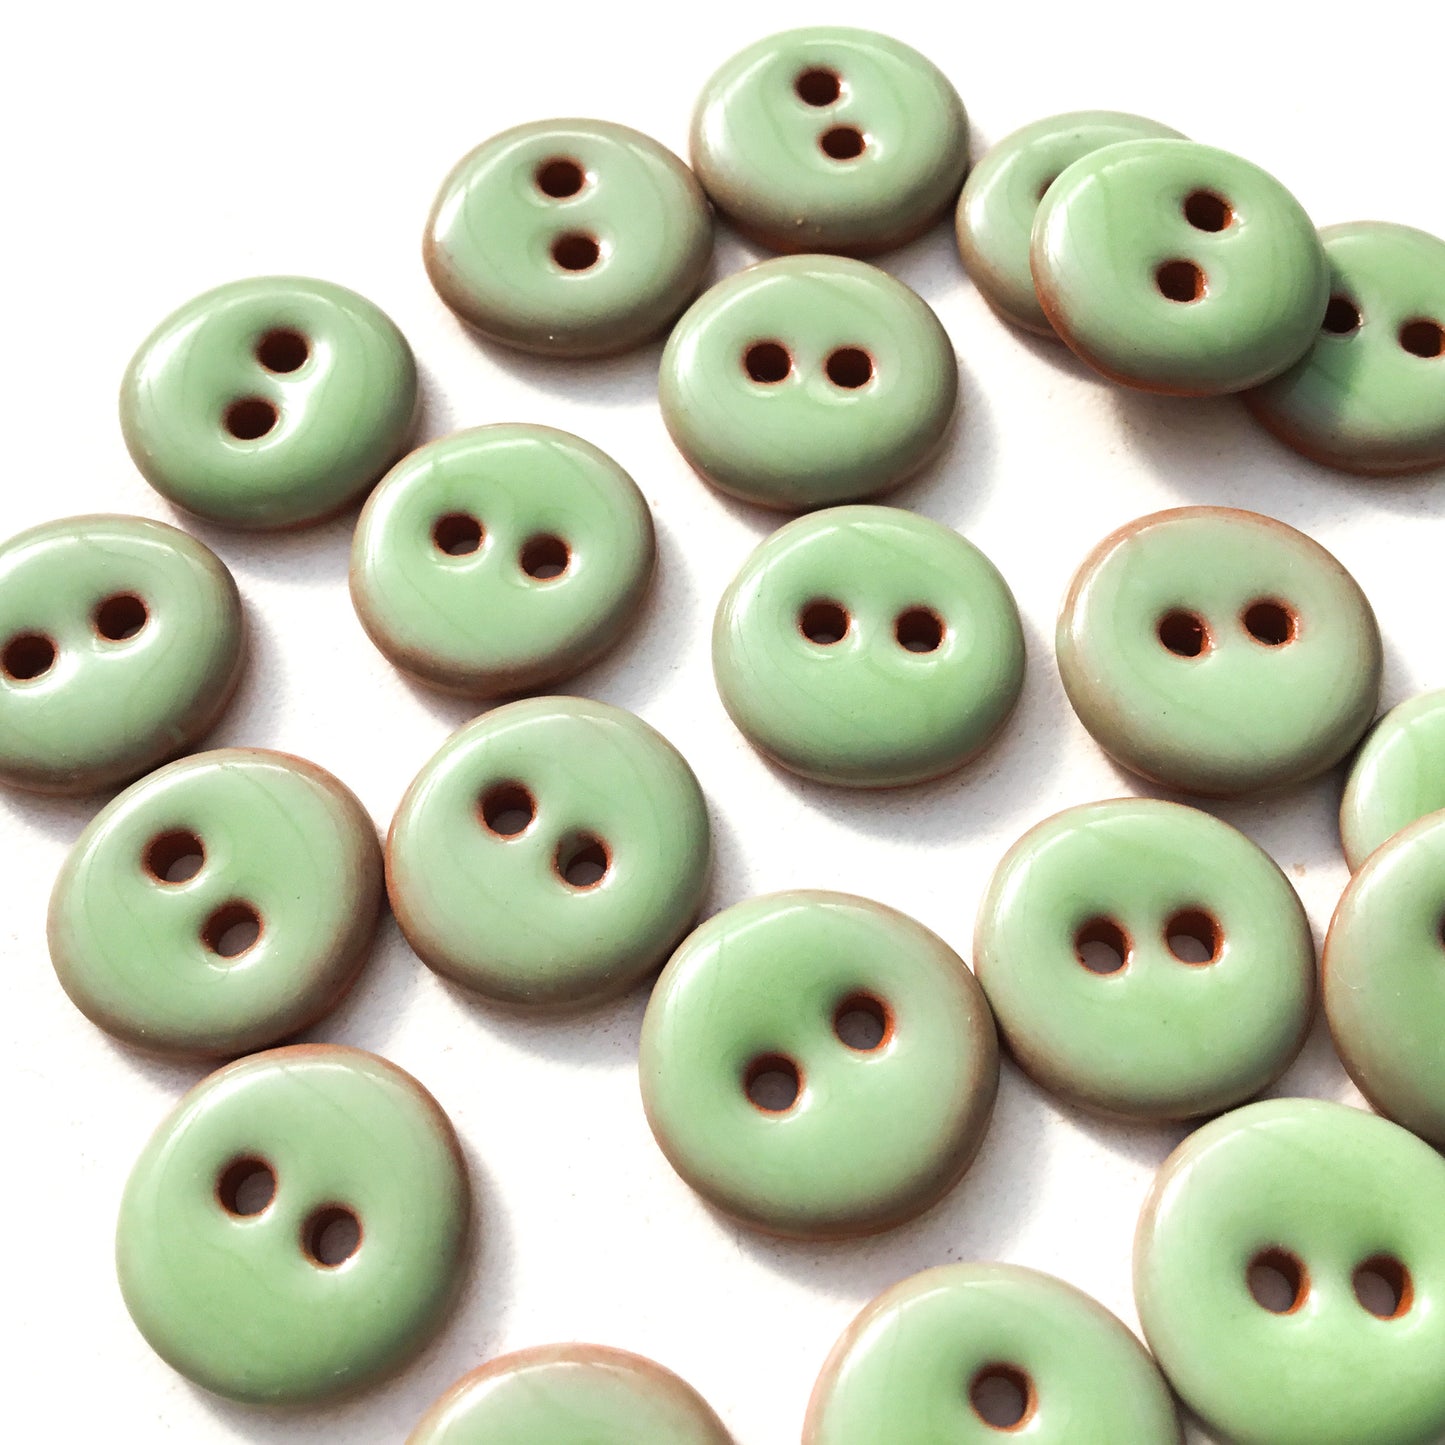 Seafoam Green Ceramic Buttons - 1/2"